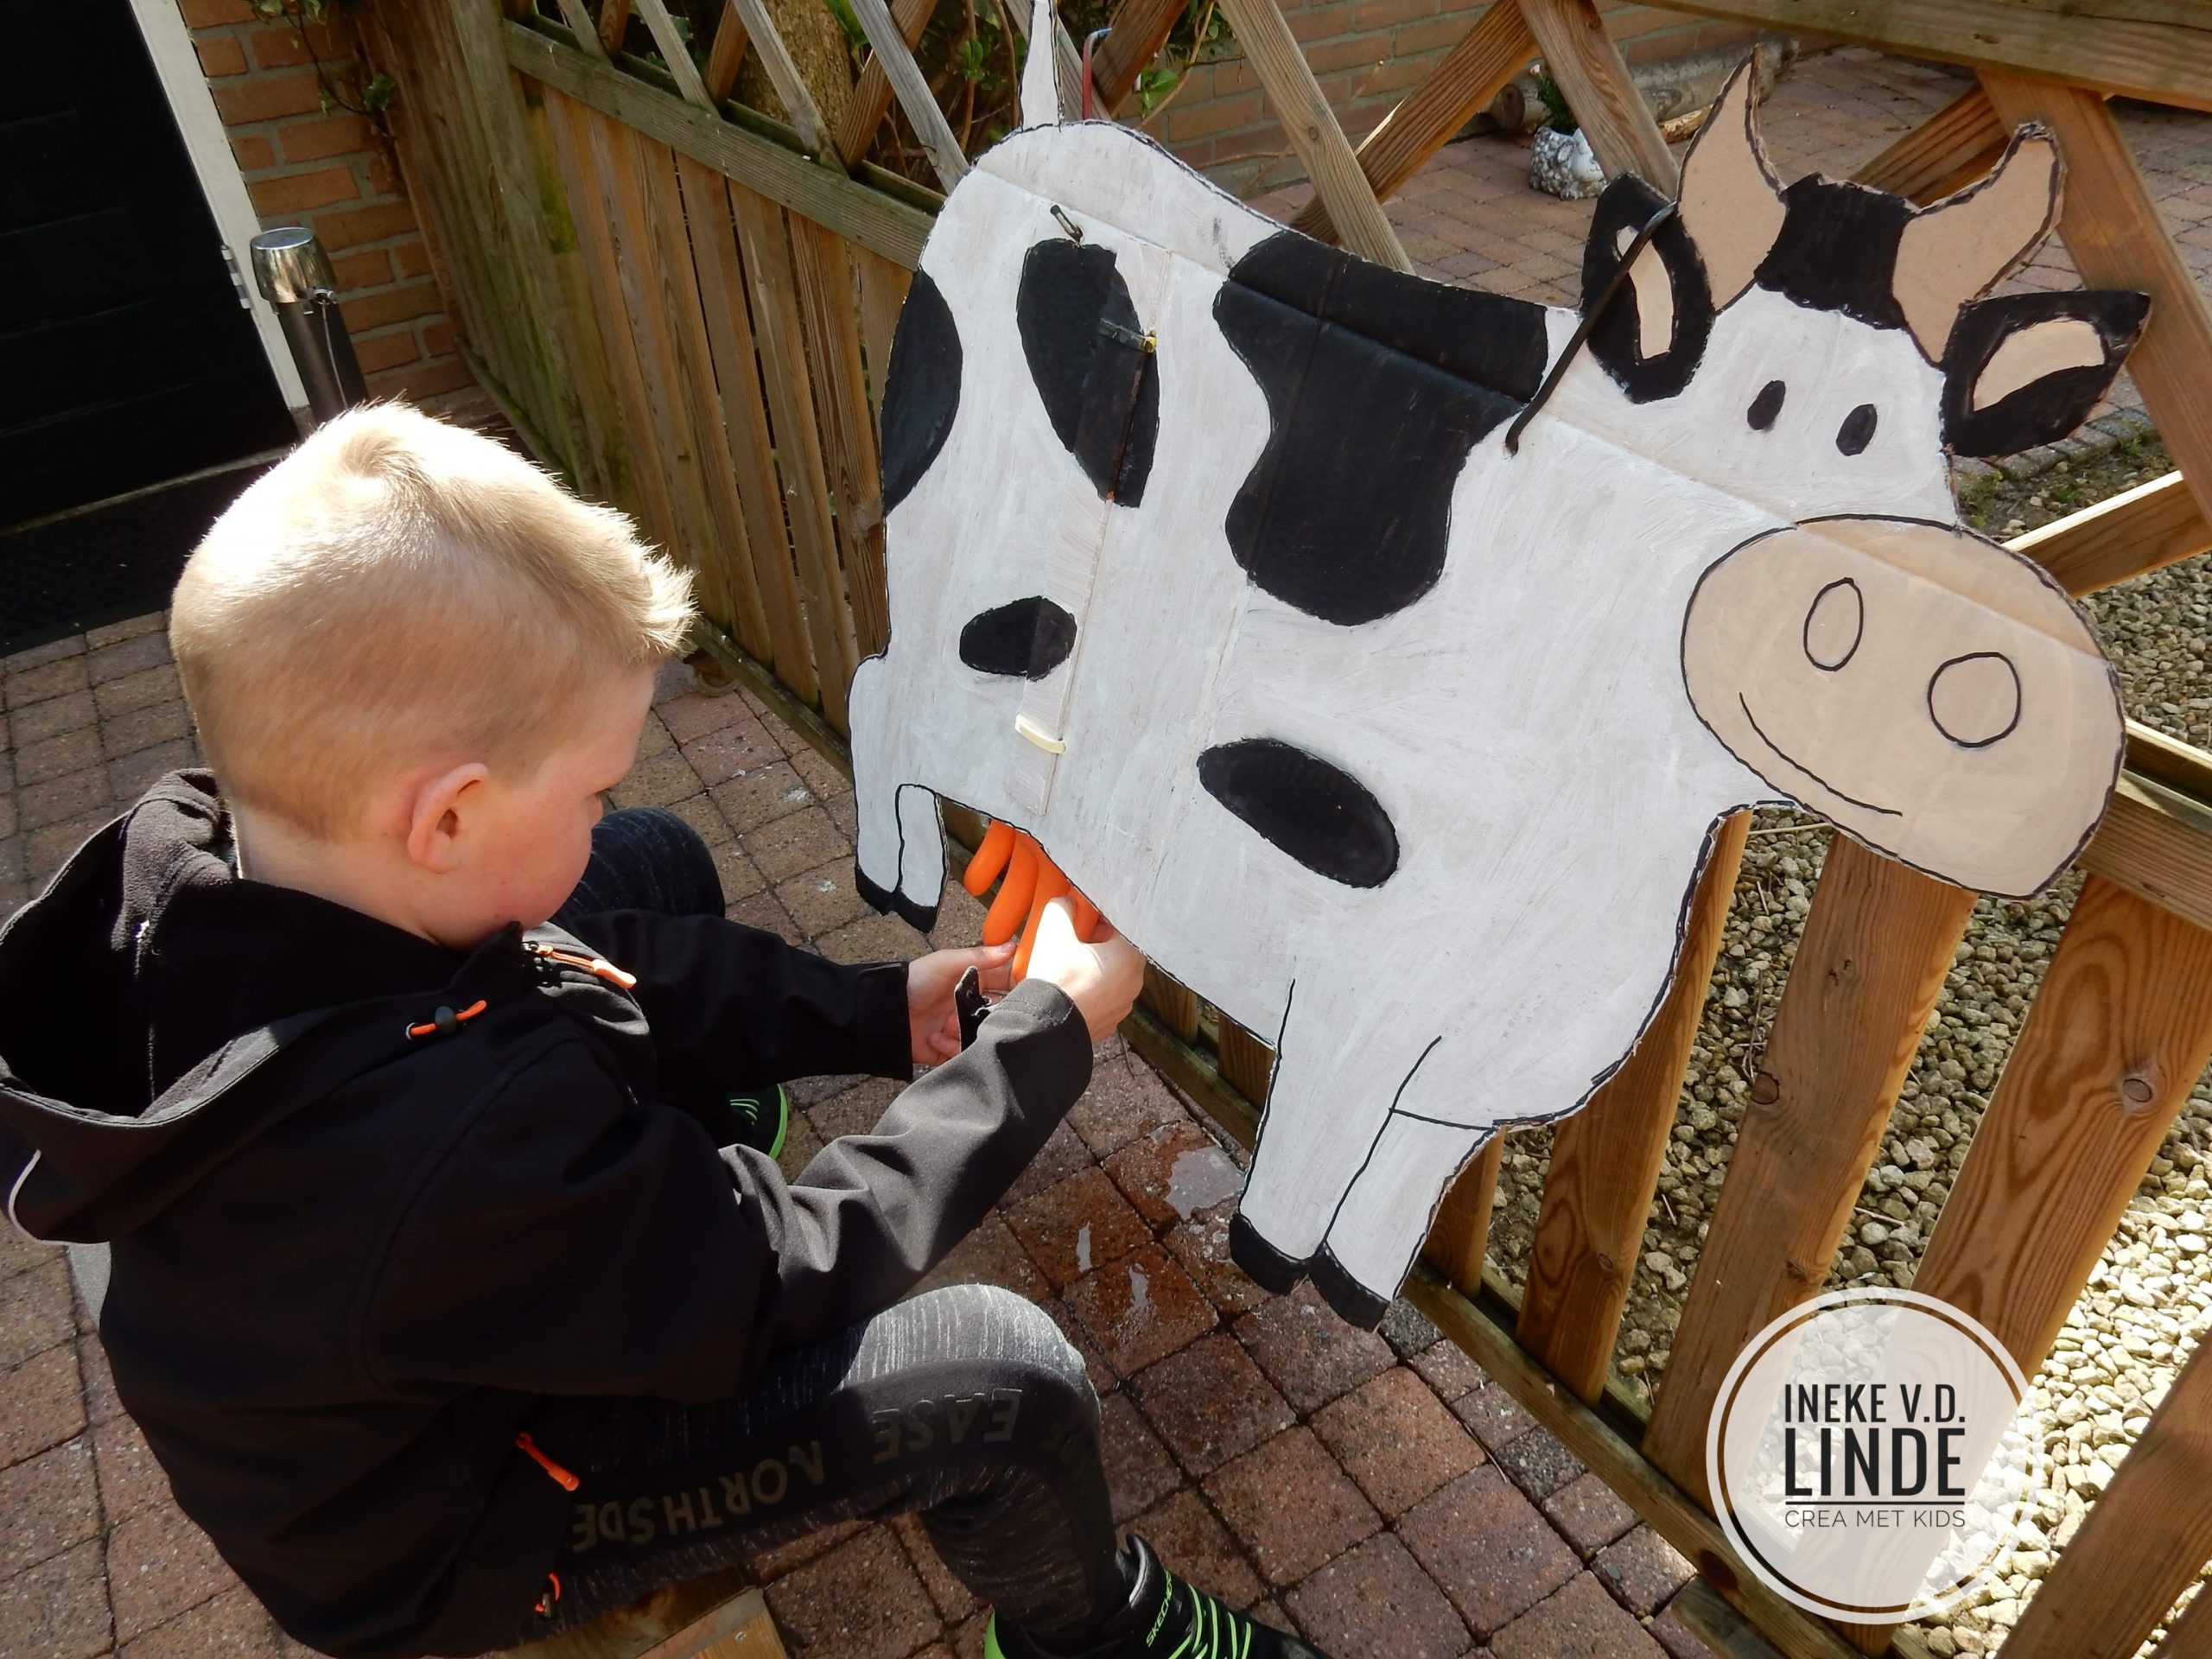 Waakzaamheid resterend zacht Koe melken met je eigen melk koe van karton » Crea met kids